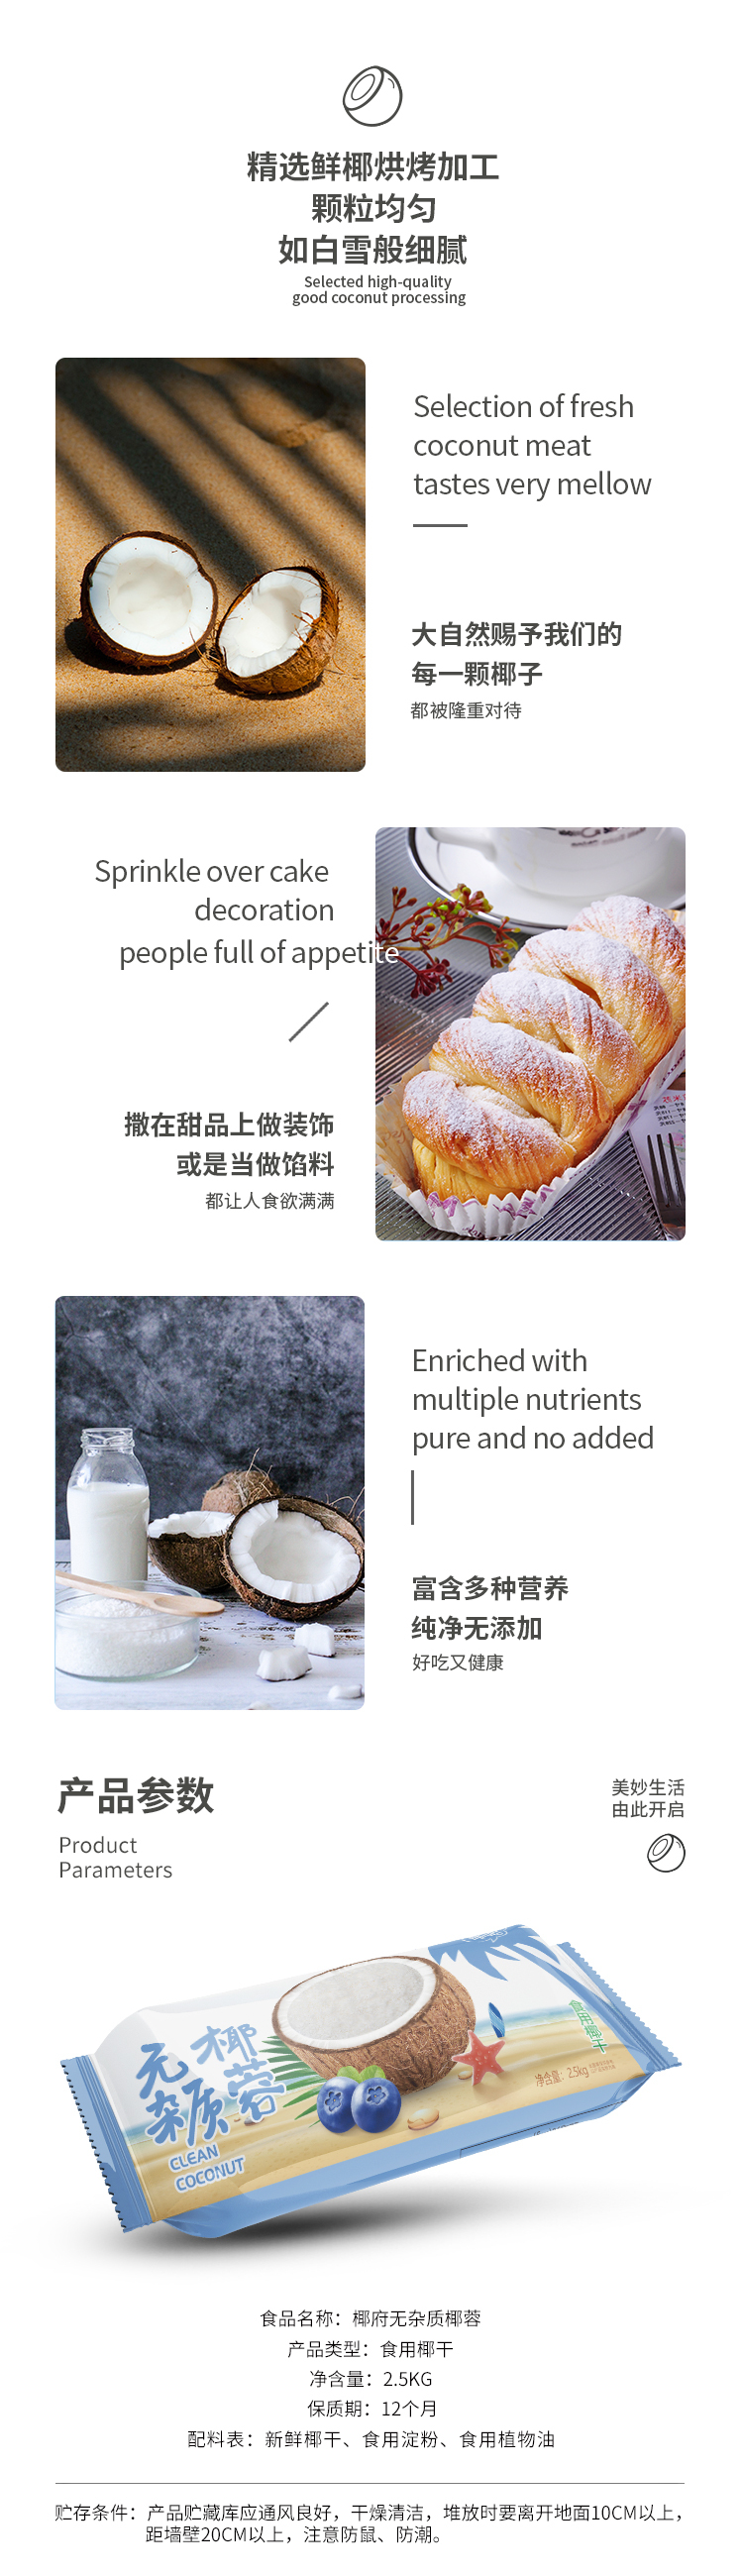 椰蓉食品详情页设计图3